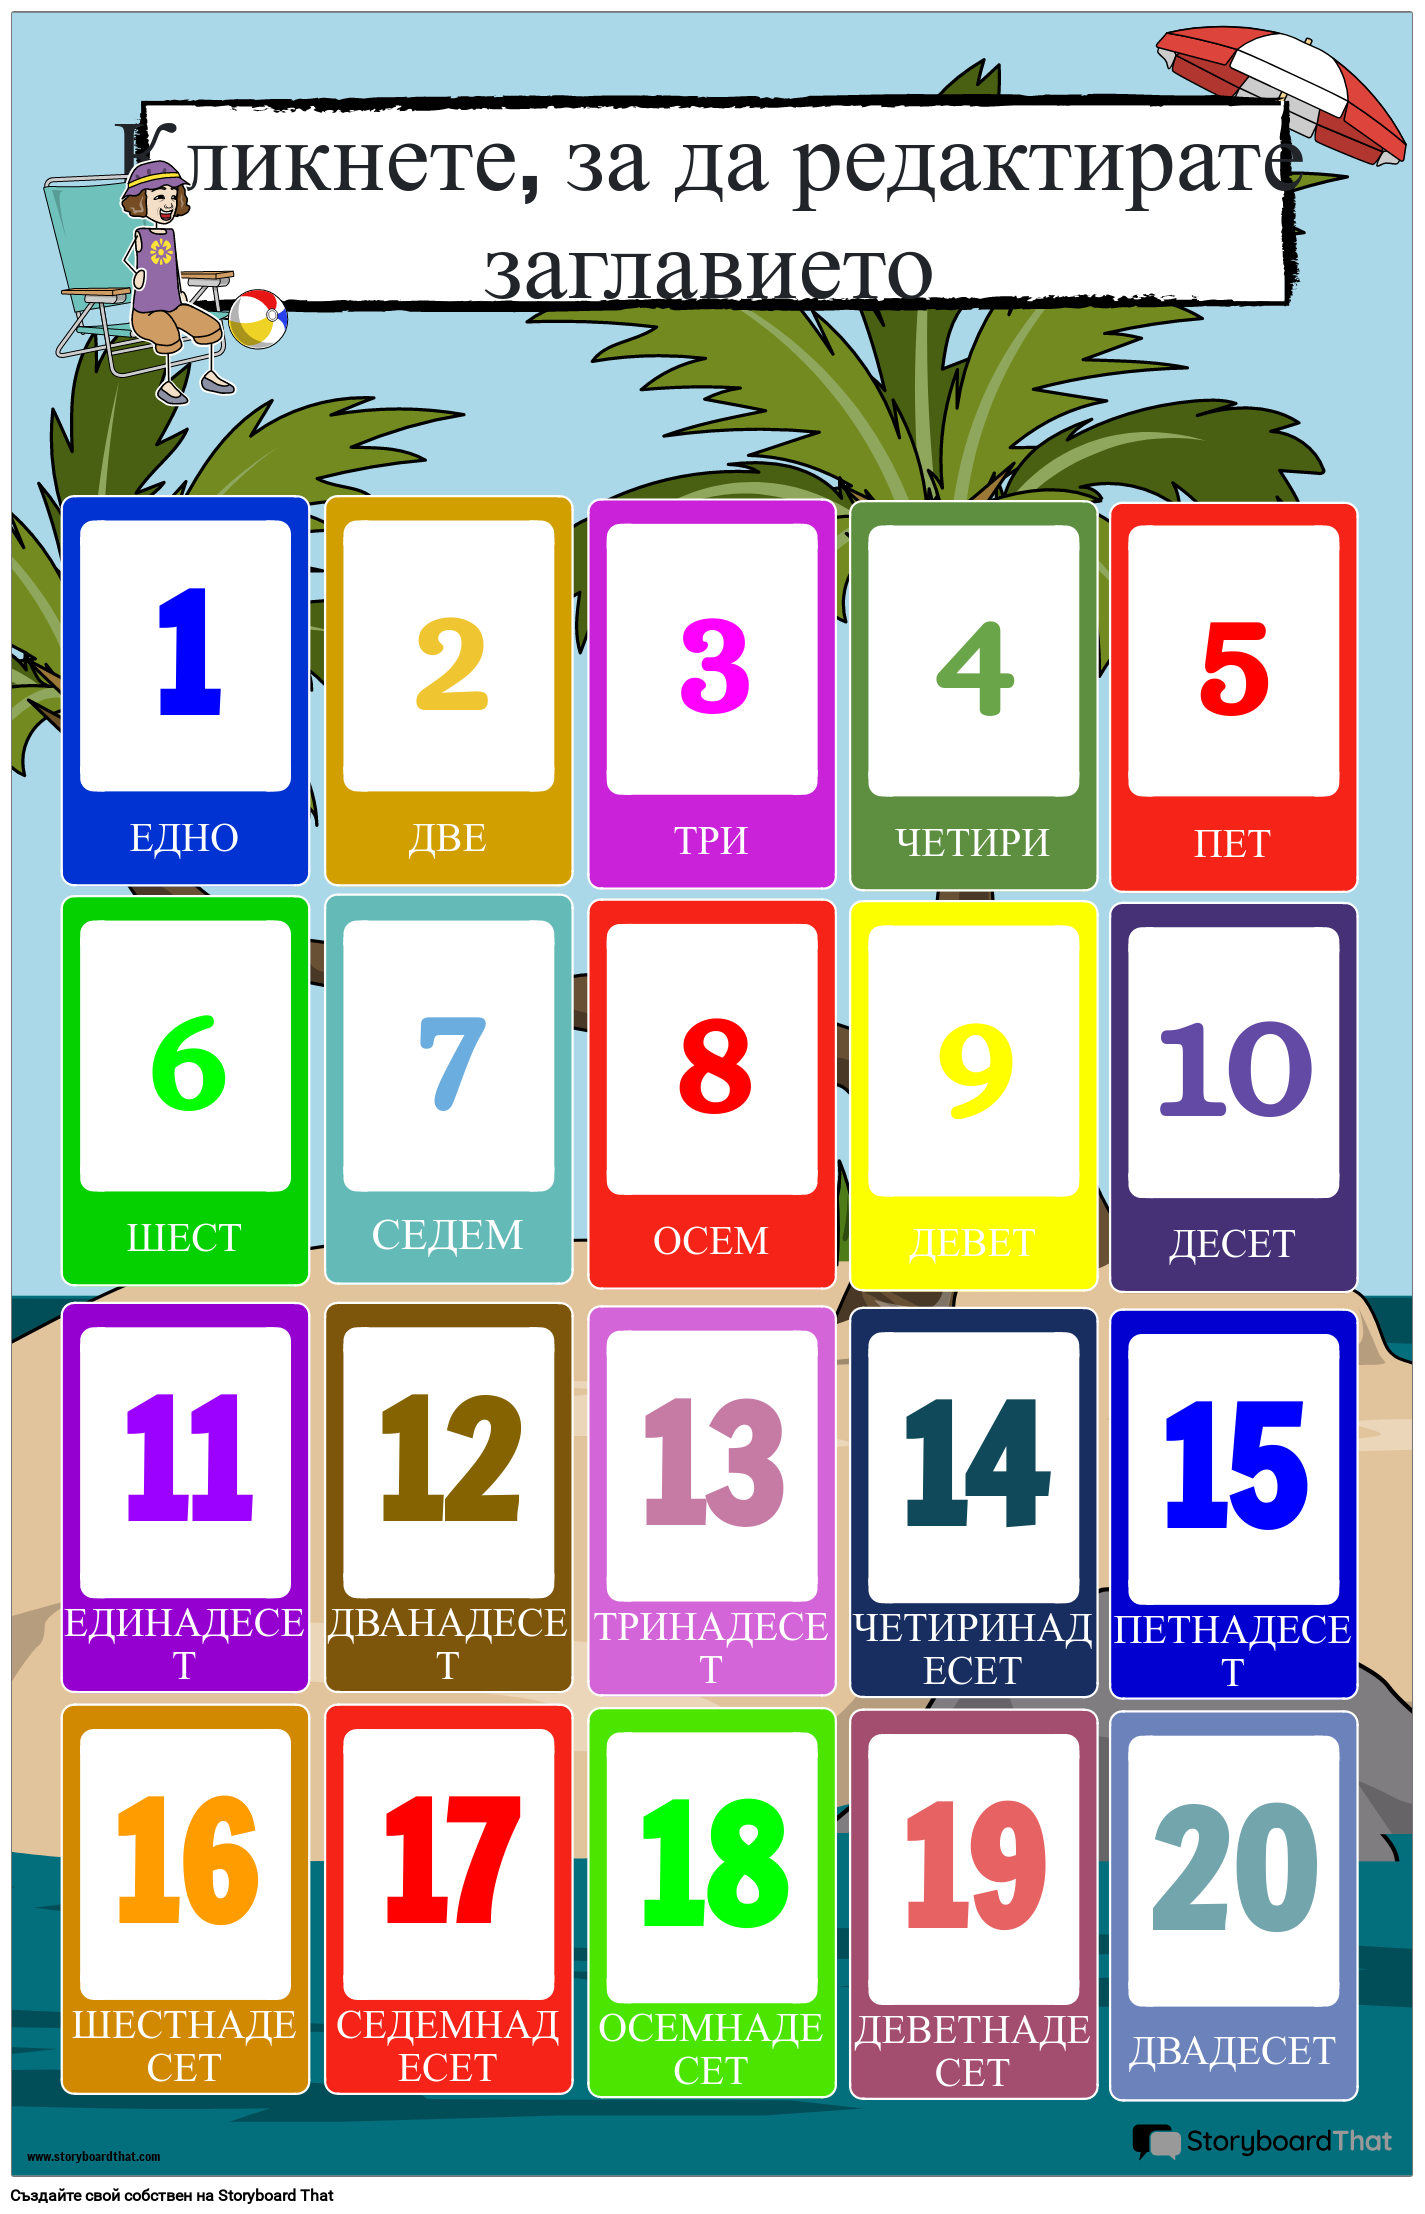 Постер с цифри на тема плаж (1-20)